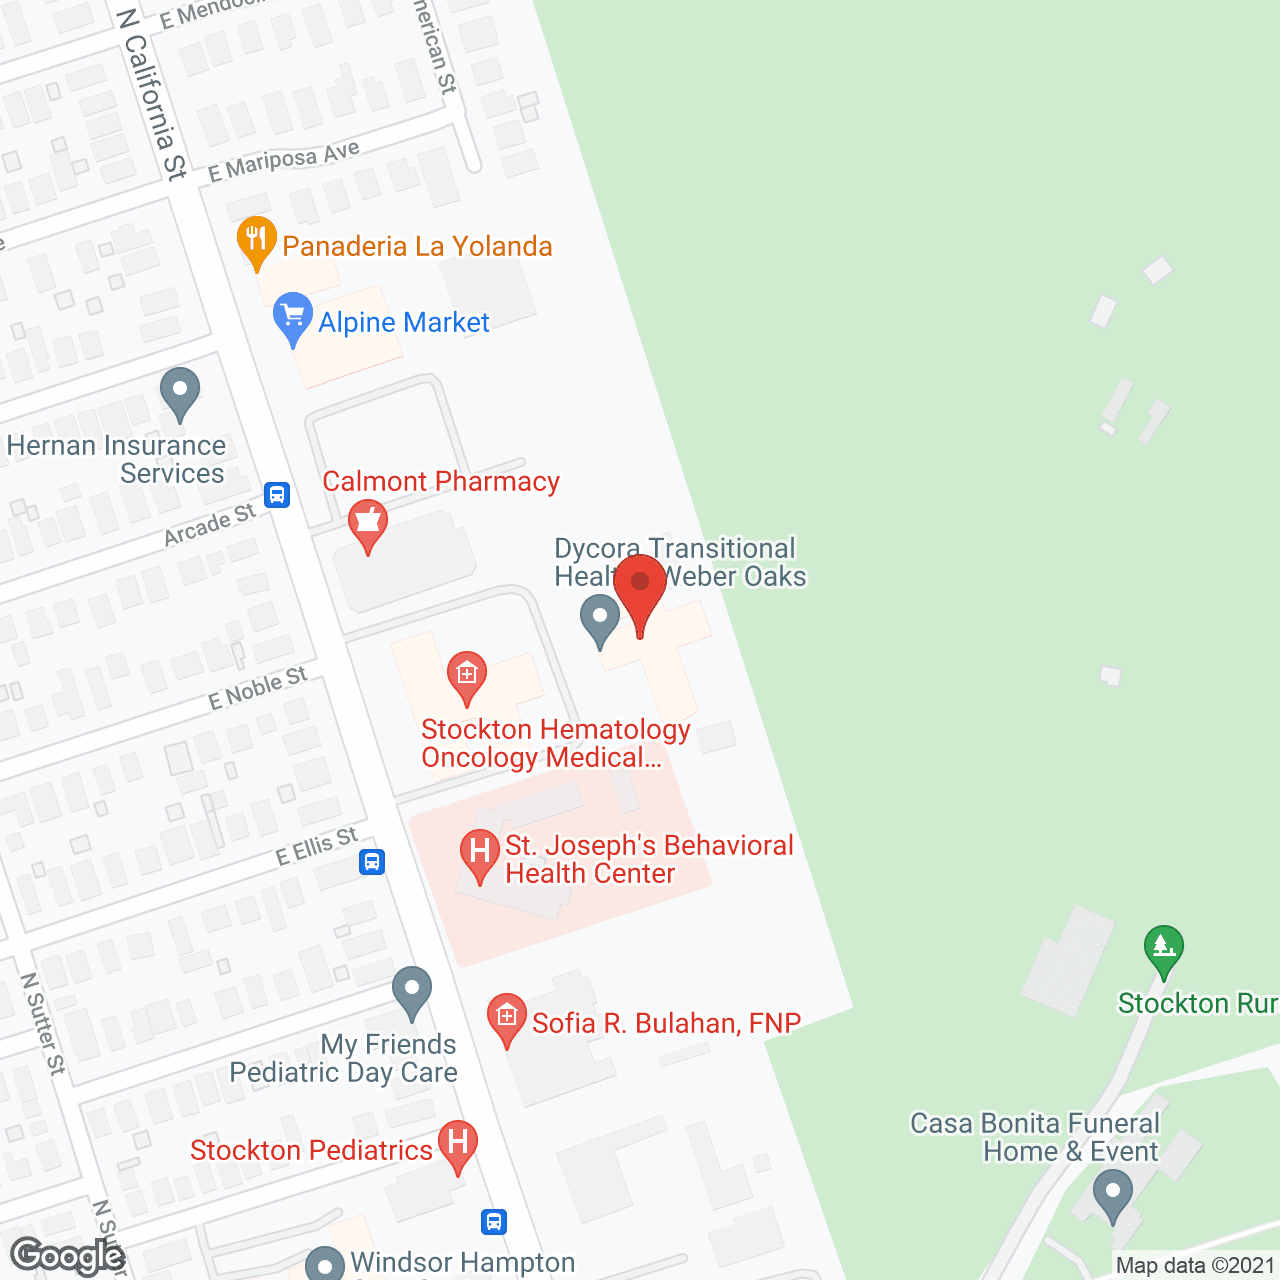 Golden LivingCenter - Portside in google map